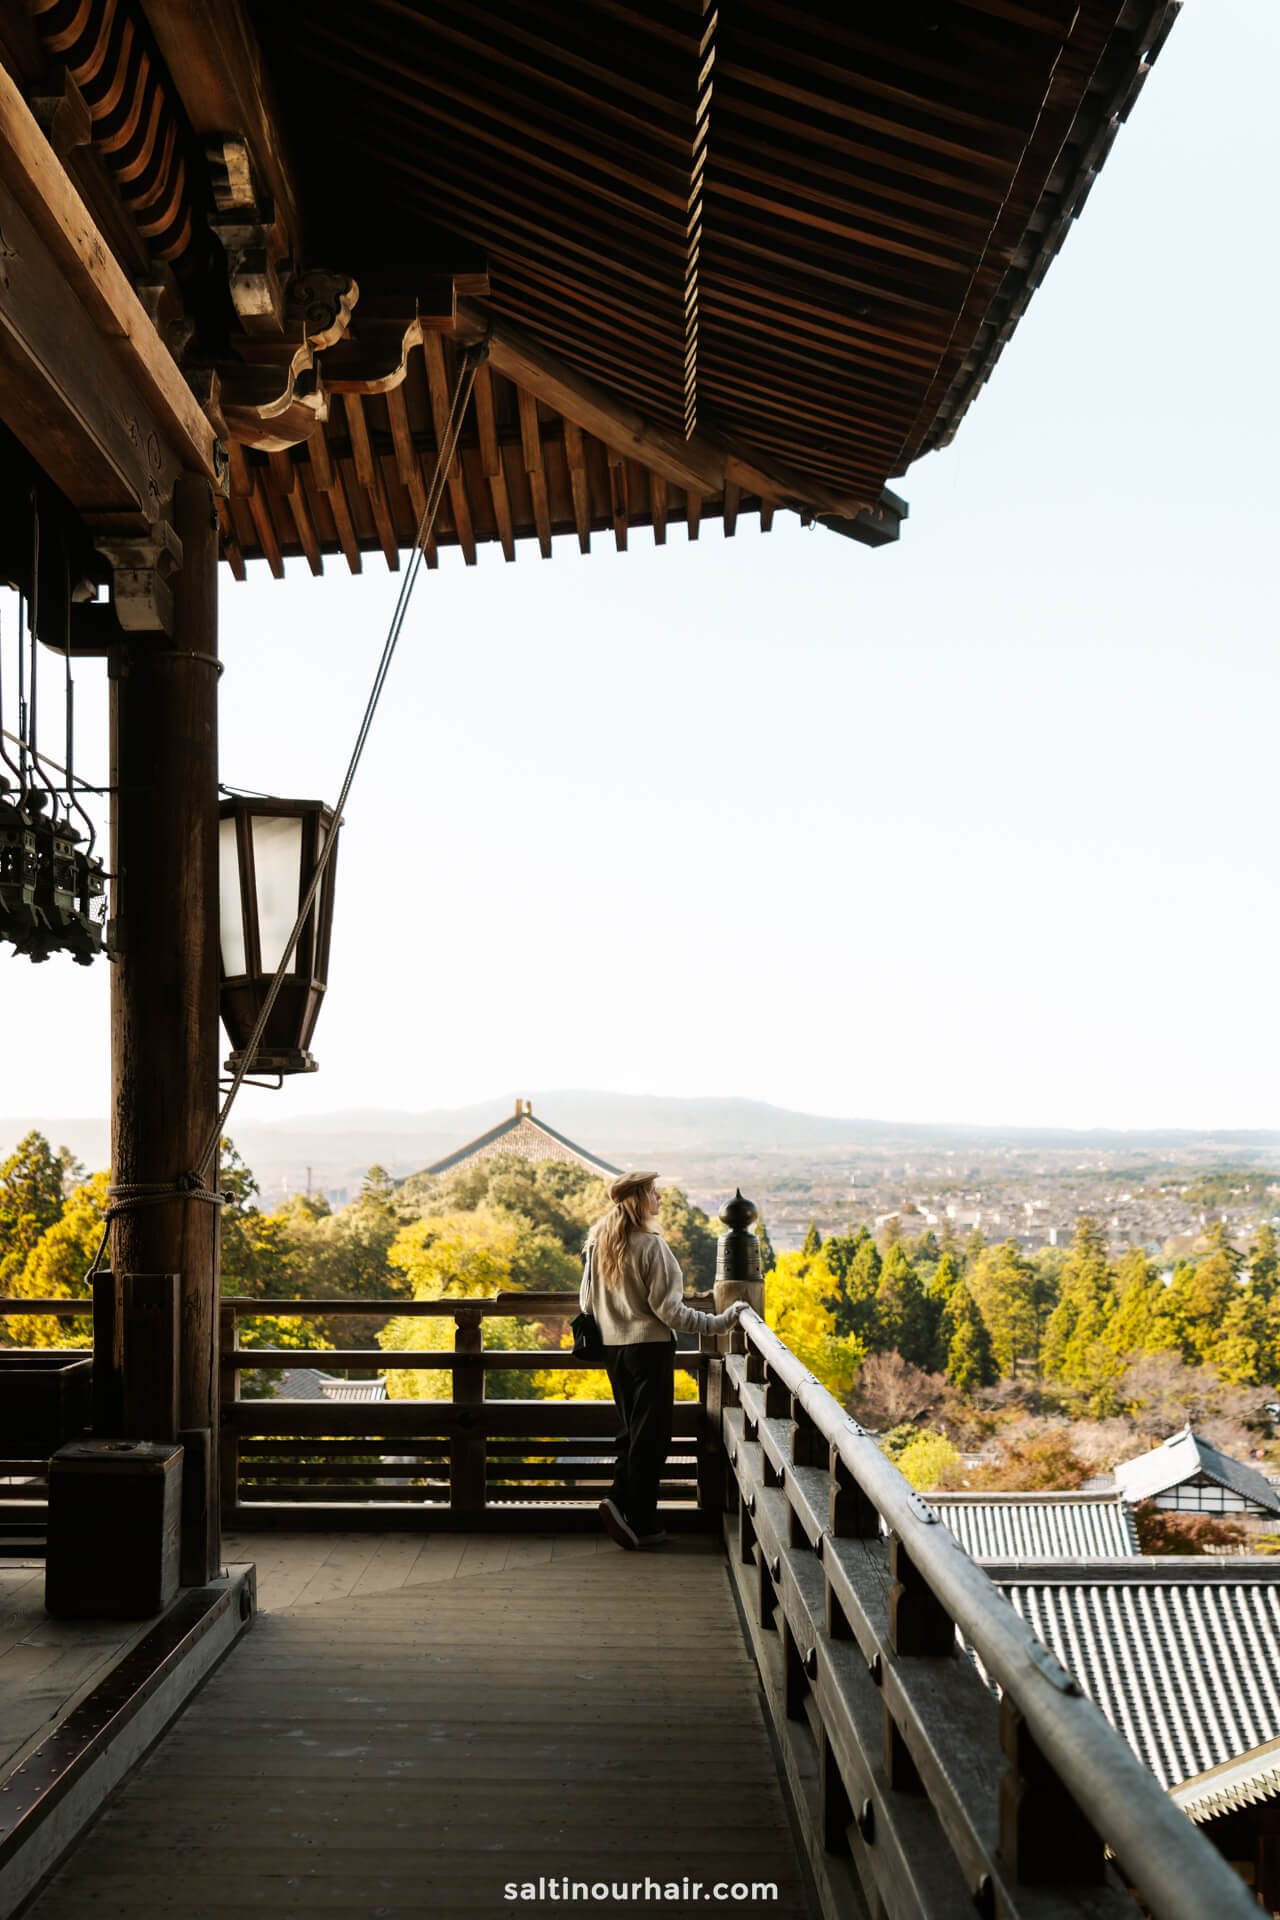 TÅdai ji Nigatsudo things to do in Nara japan